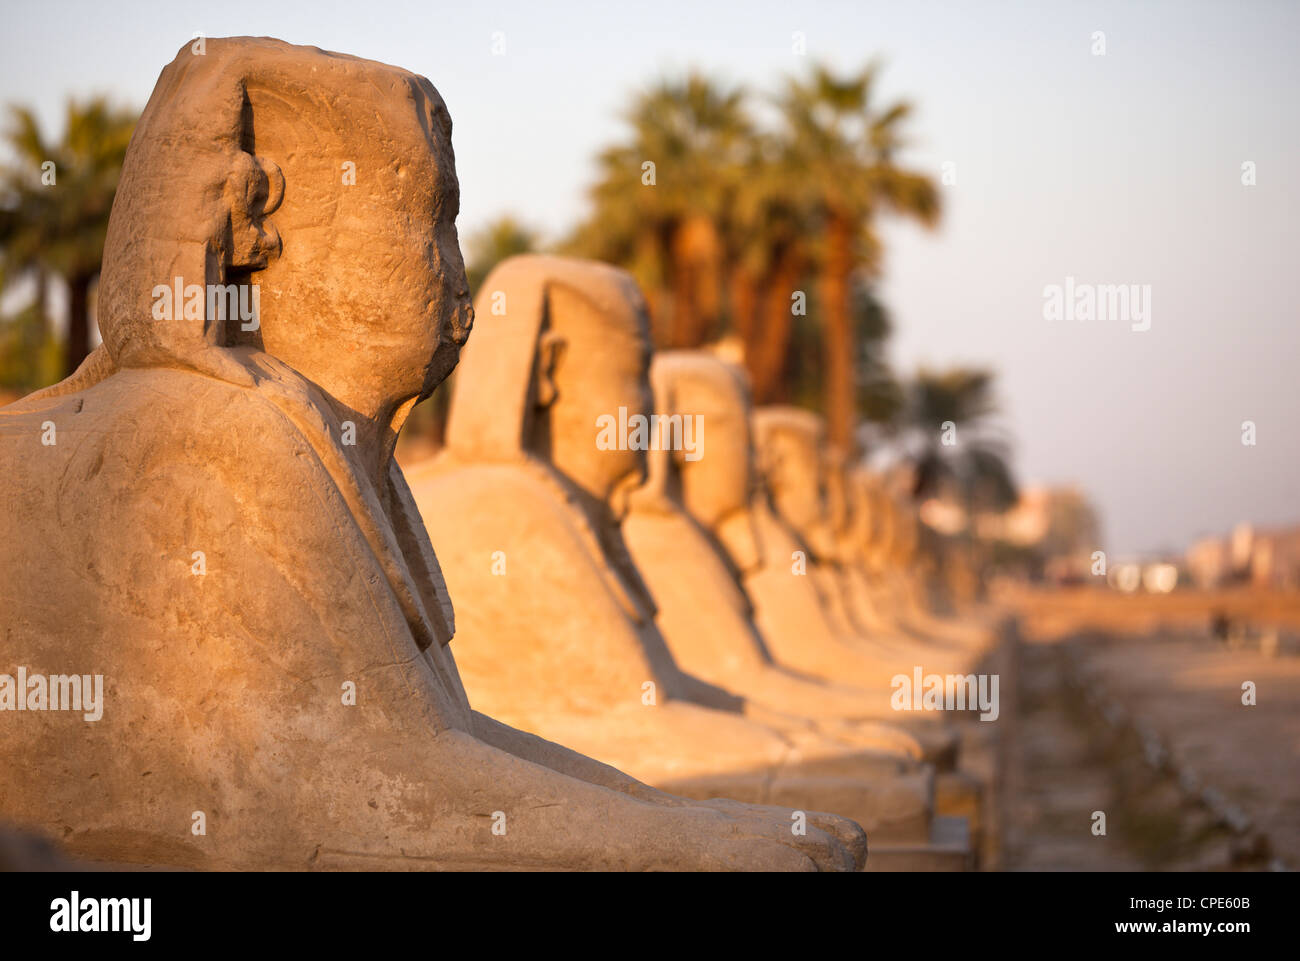 Le temple de Louxor, Louxor, Thèbes, Site du patrimoine mondial de l'UNESCO, l'Égypte, l'Afrique du Nord, Afrique Banque D'Images